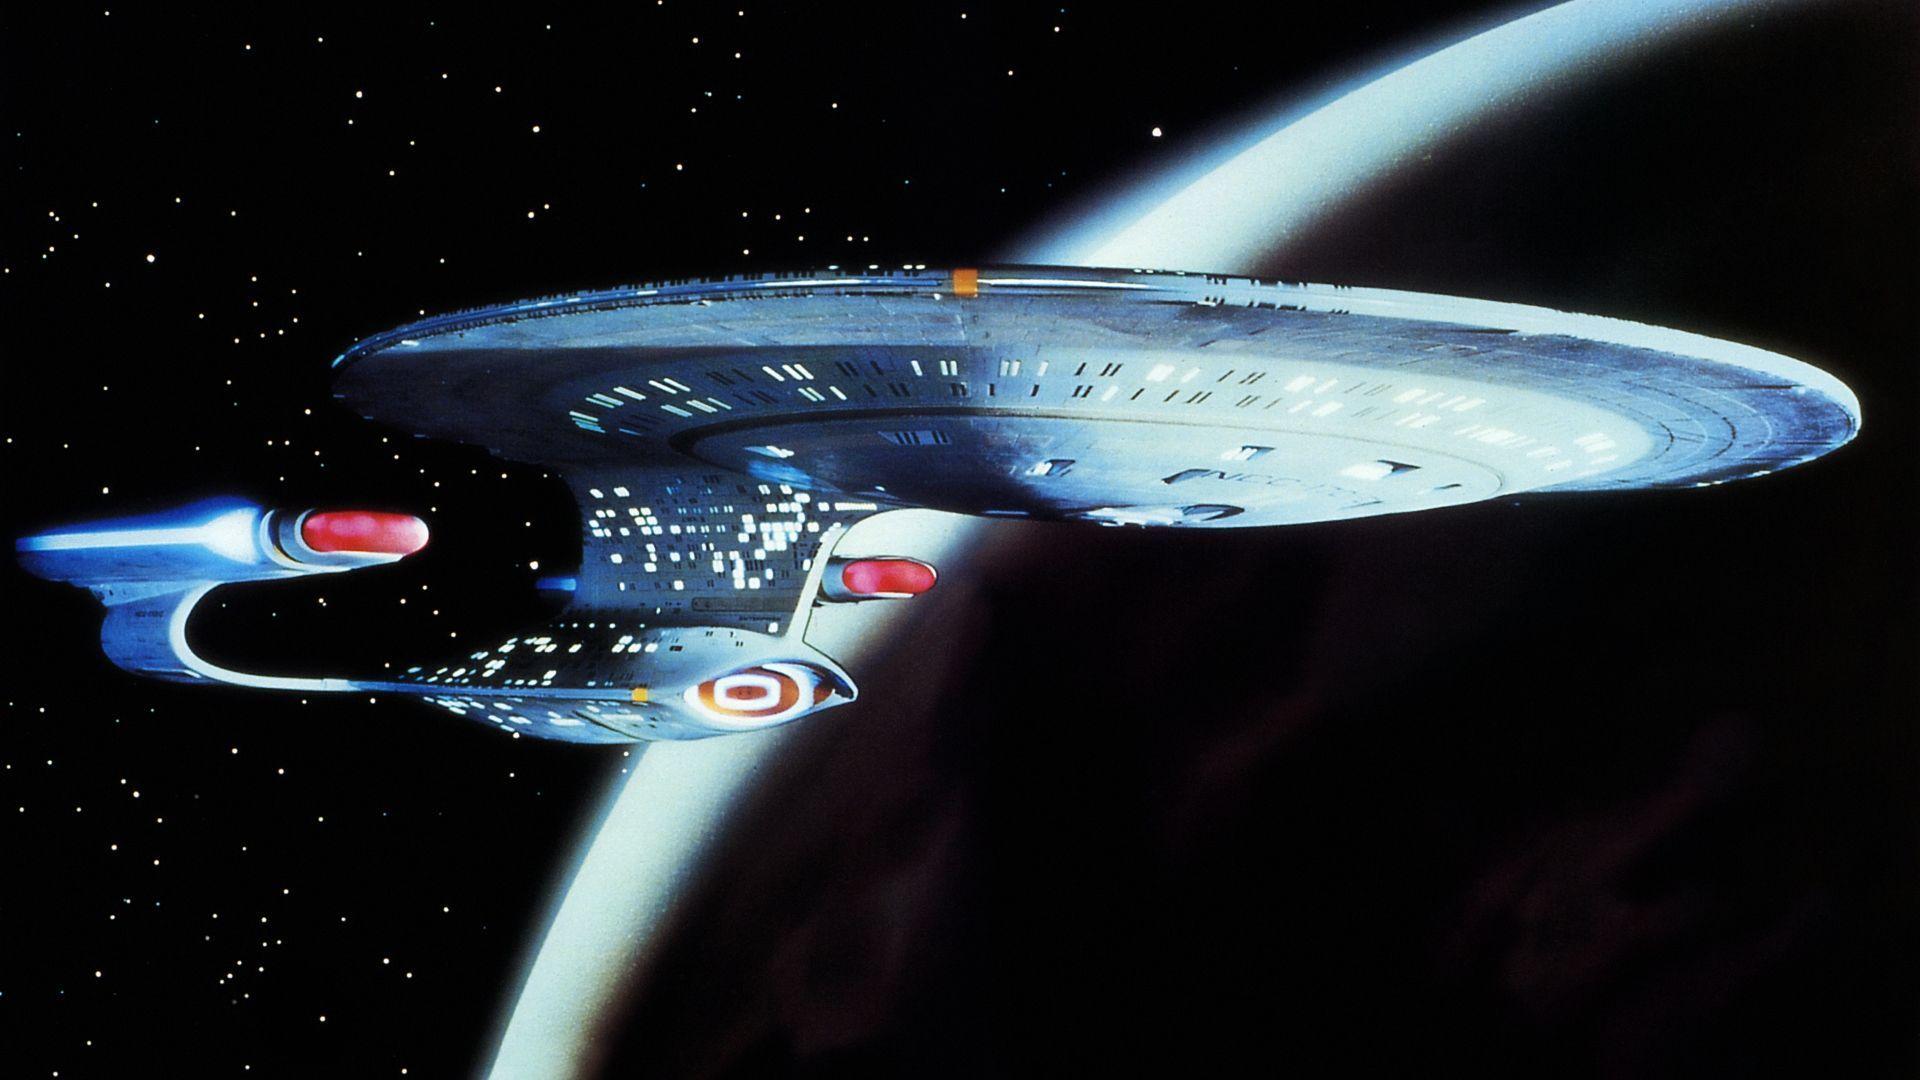 Star Trek photo in high resolution